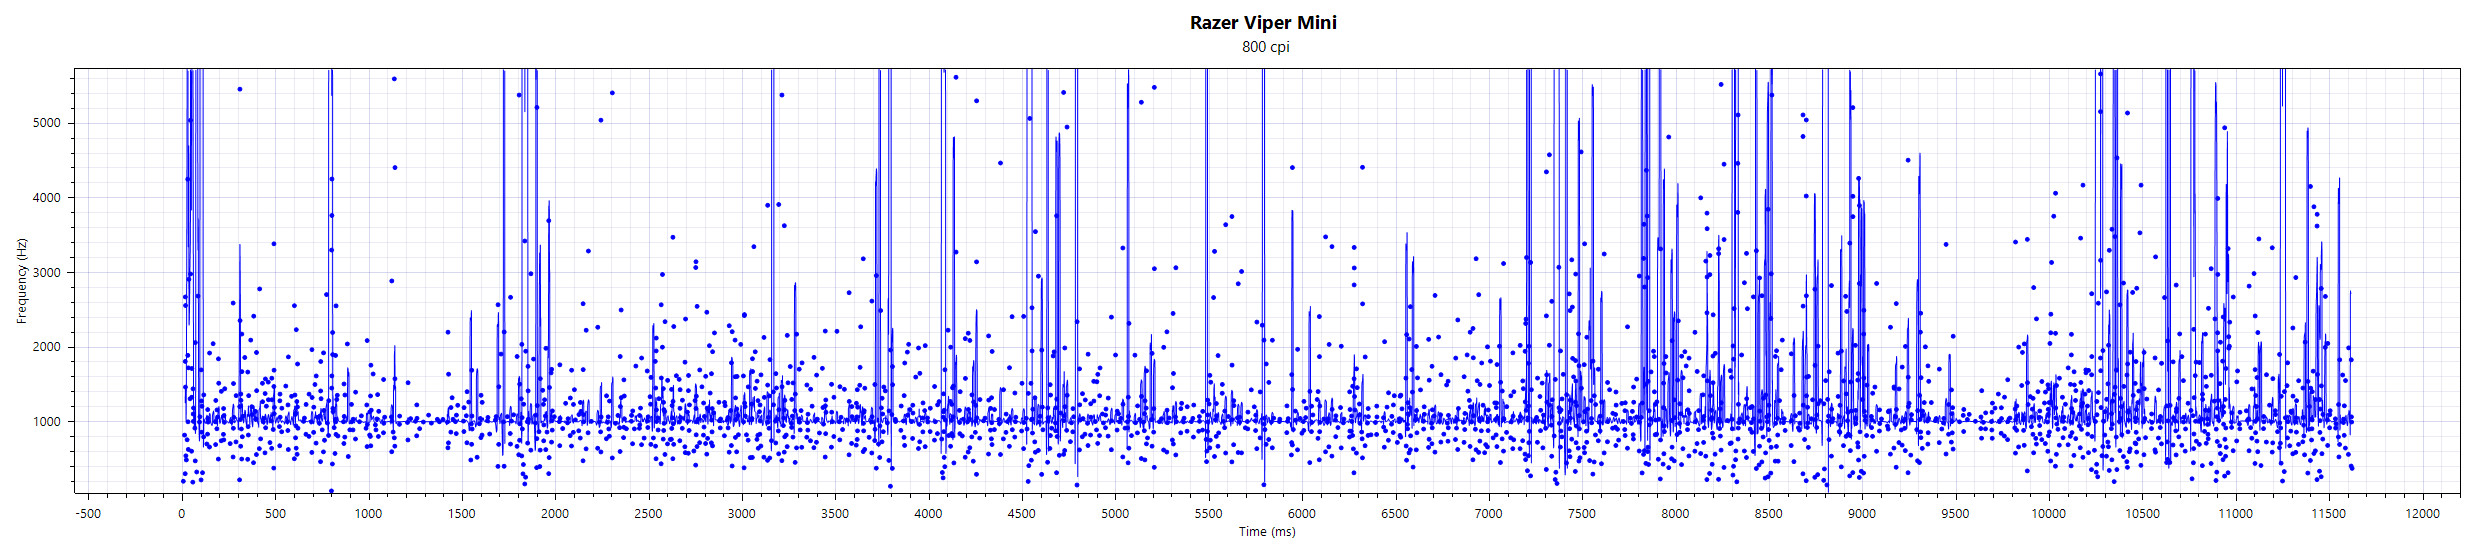 Razer_Viper_Mini_F_500